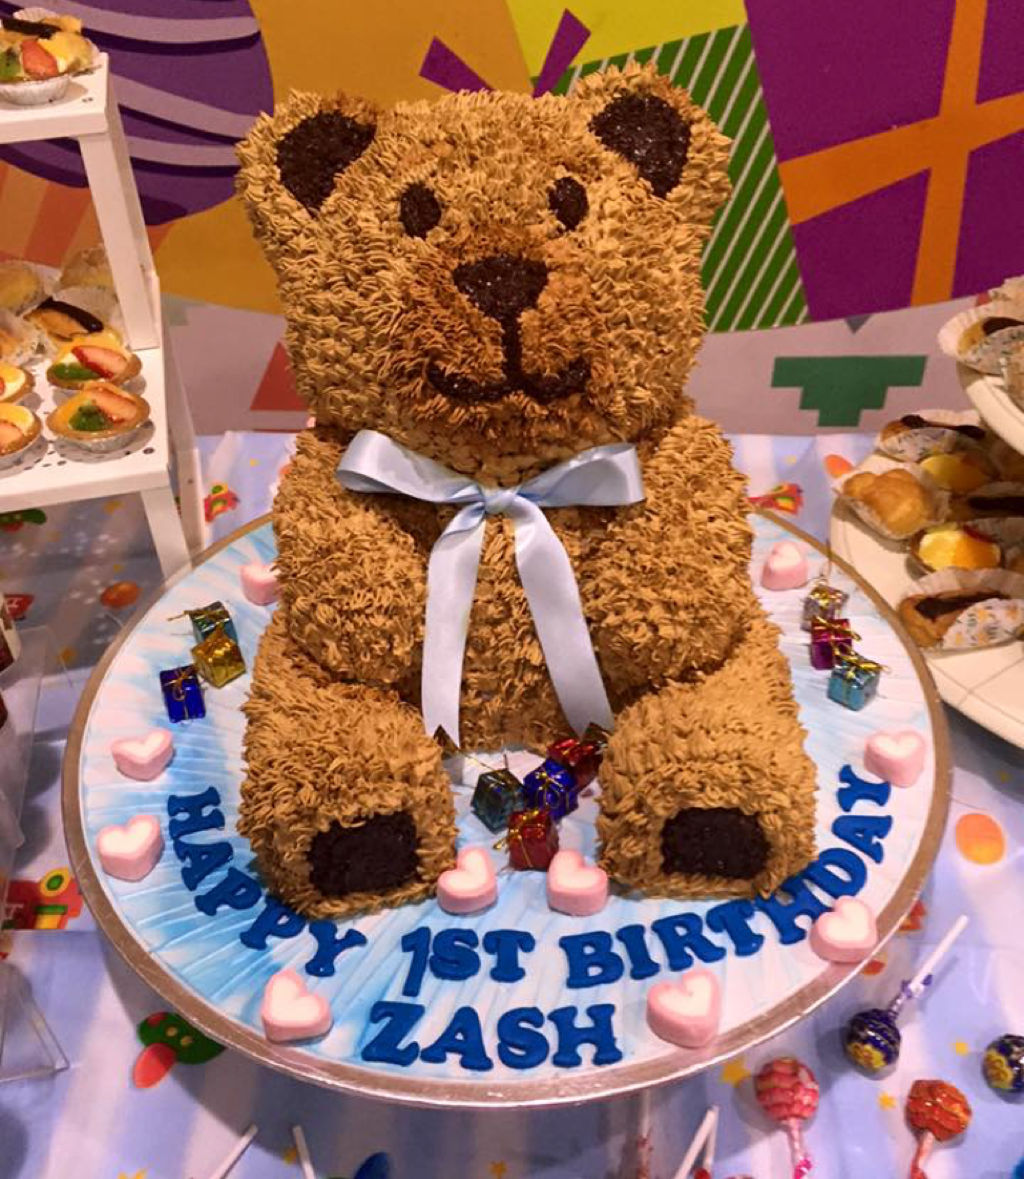 Kid's birthday Cake - Teddy bear cake from Baker's Heart